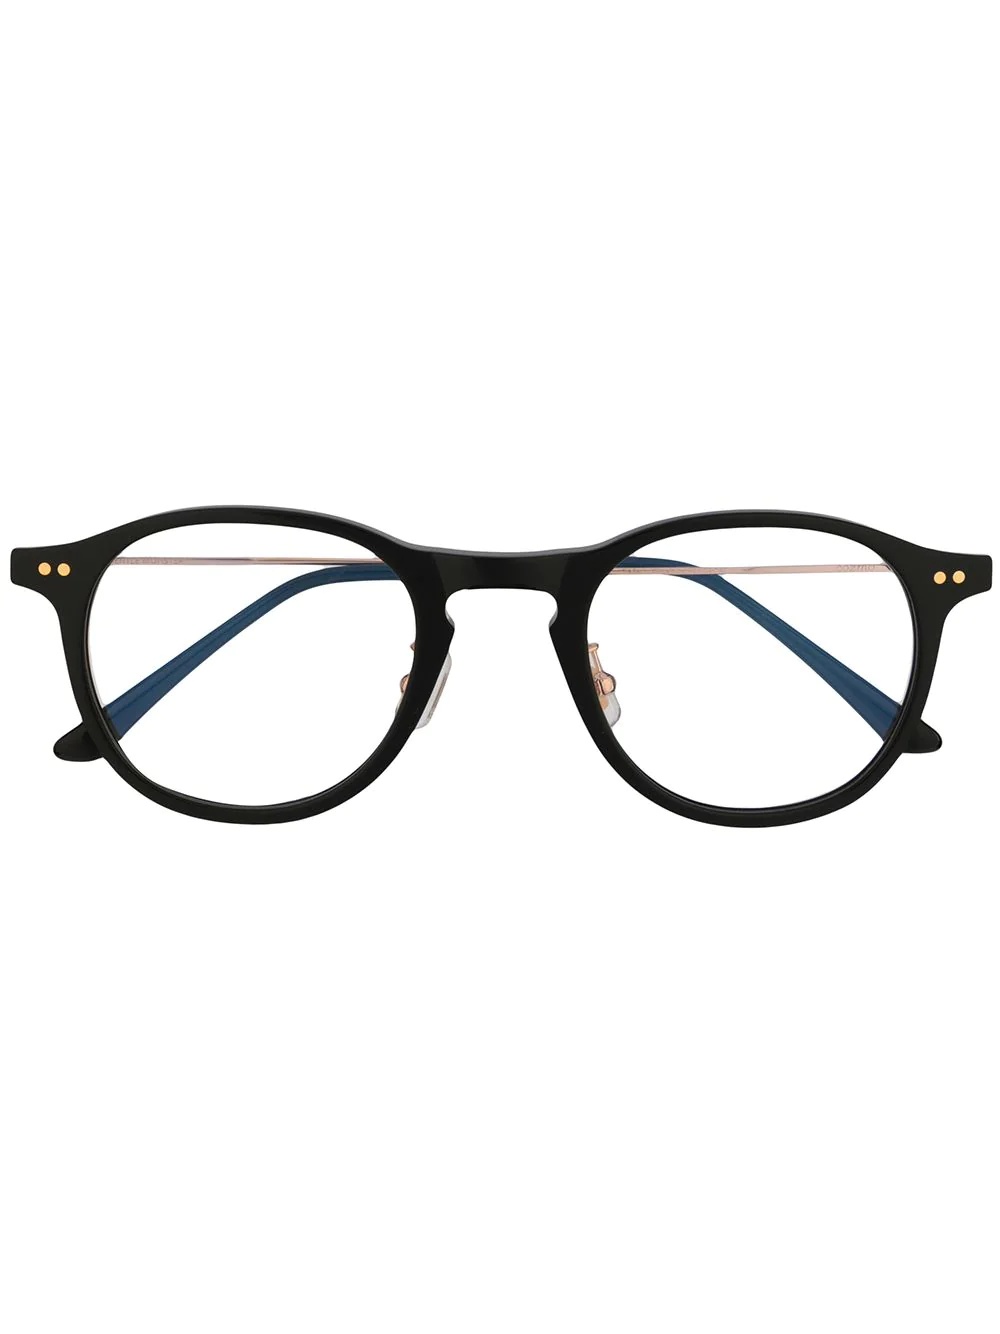 GENTLE MONSTER Cozmo 01 optical glasses - REVERSIBLE